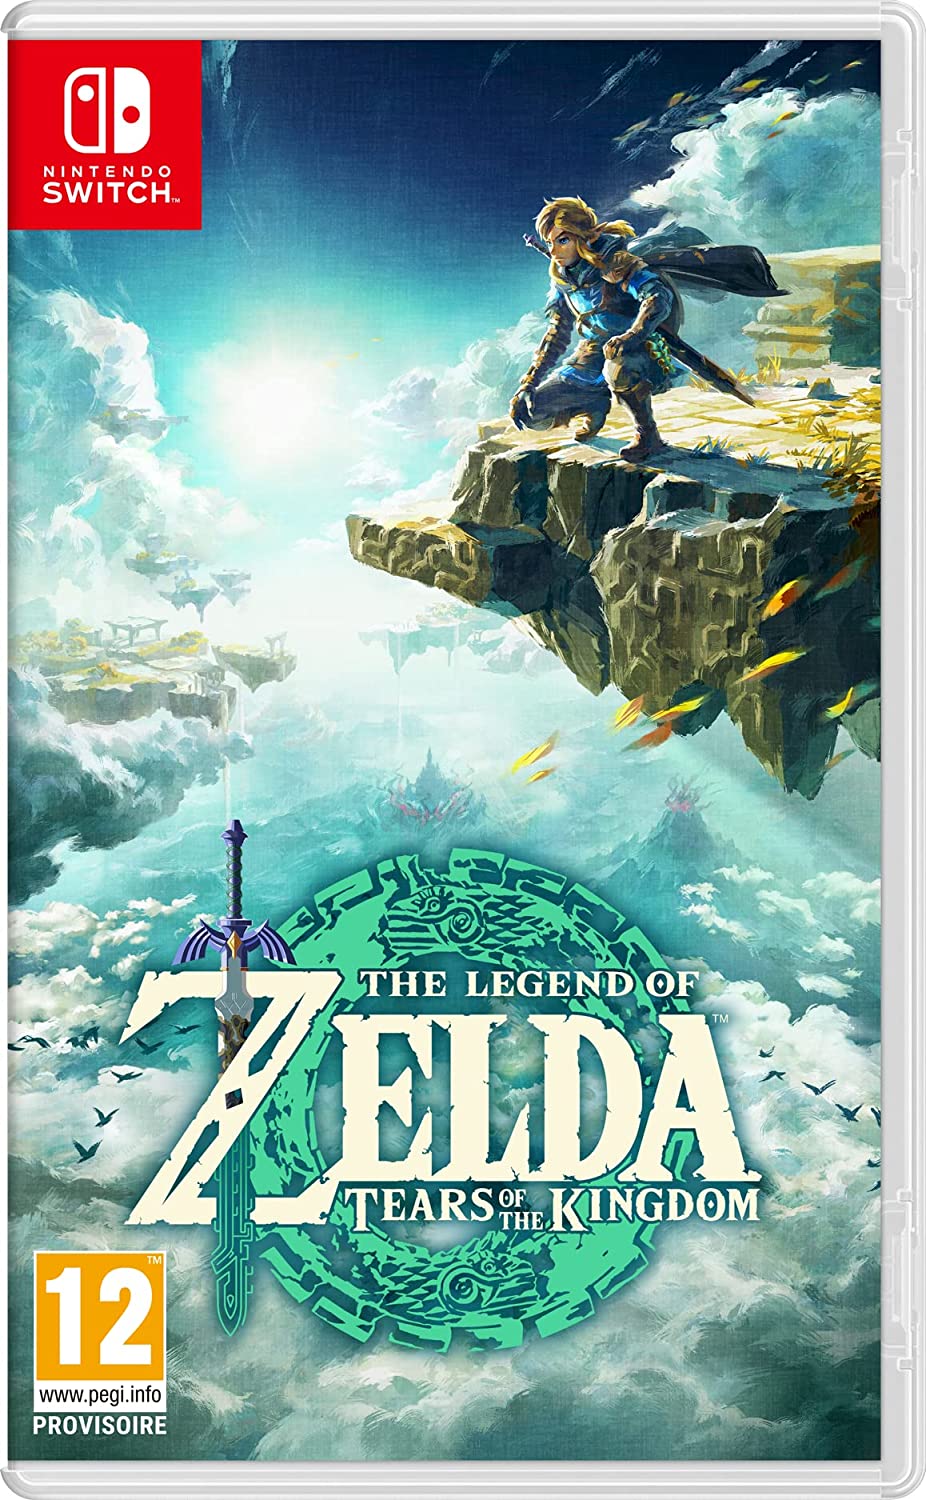 NintendHOME – Info Nintendo 24/7 on X: 🛍 Retour en stock – Pour ceux qui  l'ont raté, le porte-clés phosphorescent Zelda: Tears of the Kingdom est de  nouveau disponible en tant que